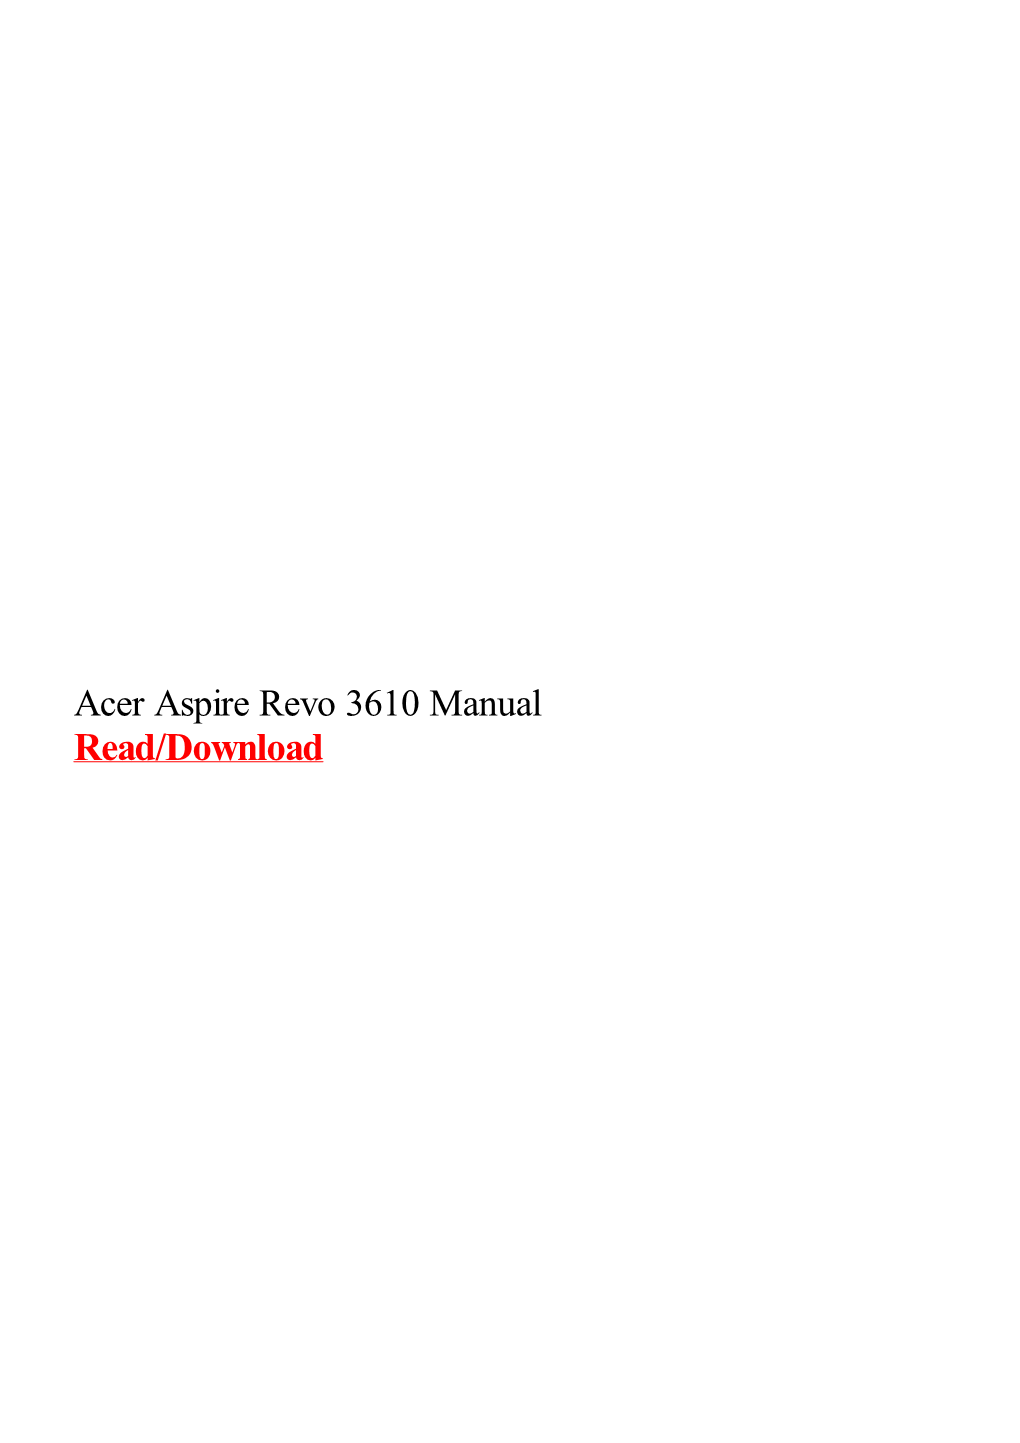 Acer Aspire Revo 3610 Manual.Pdf